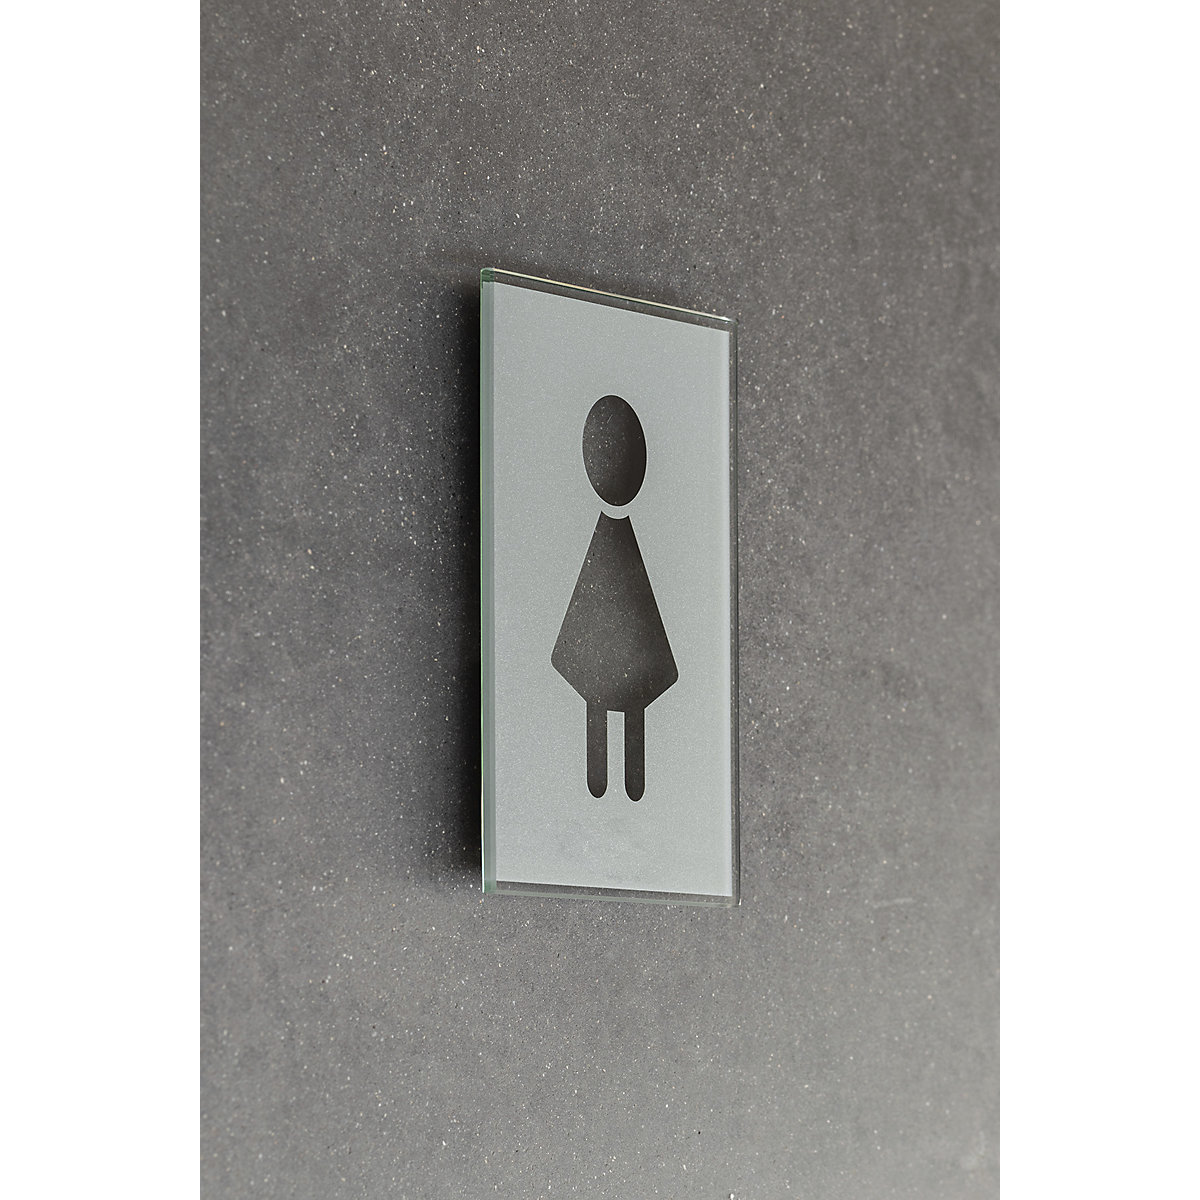 WC pictogram door sign